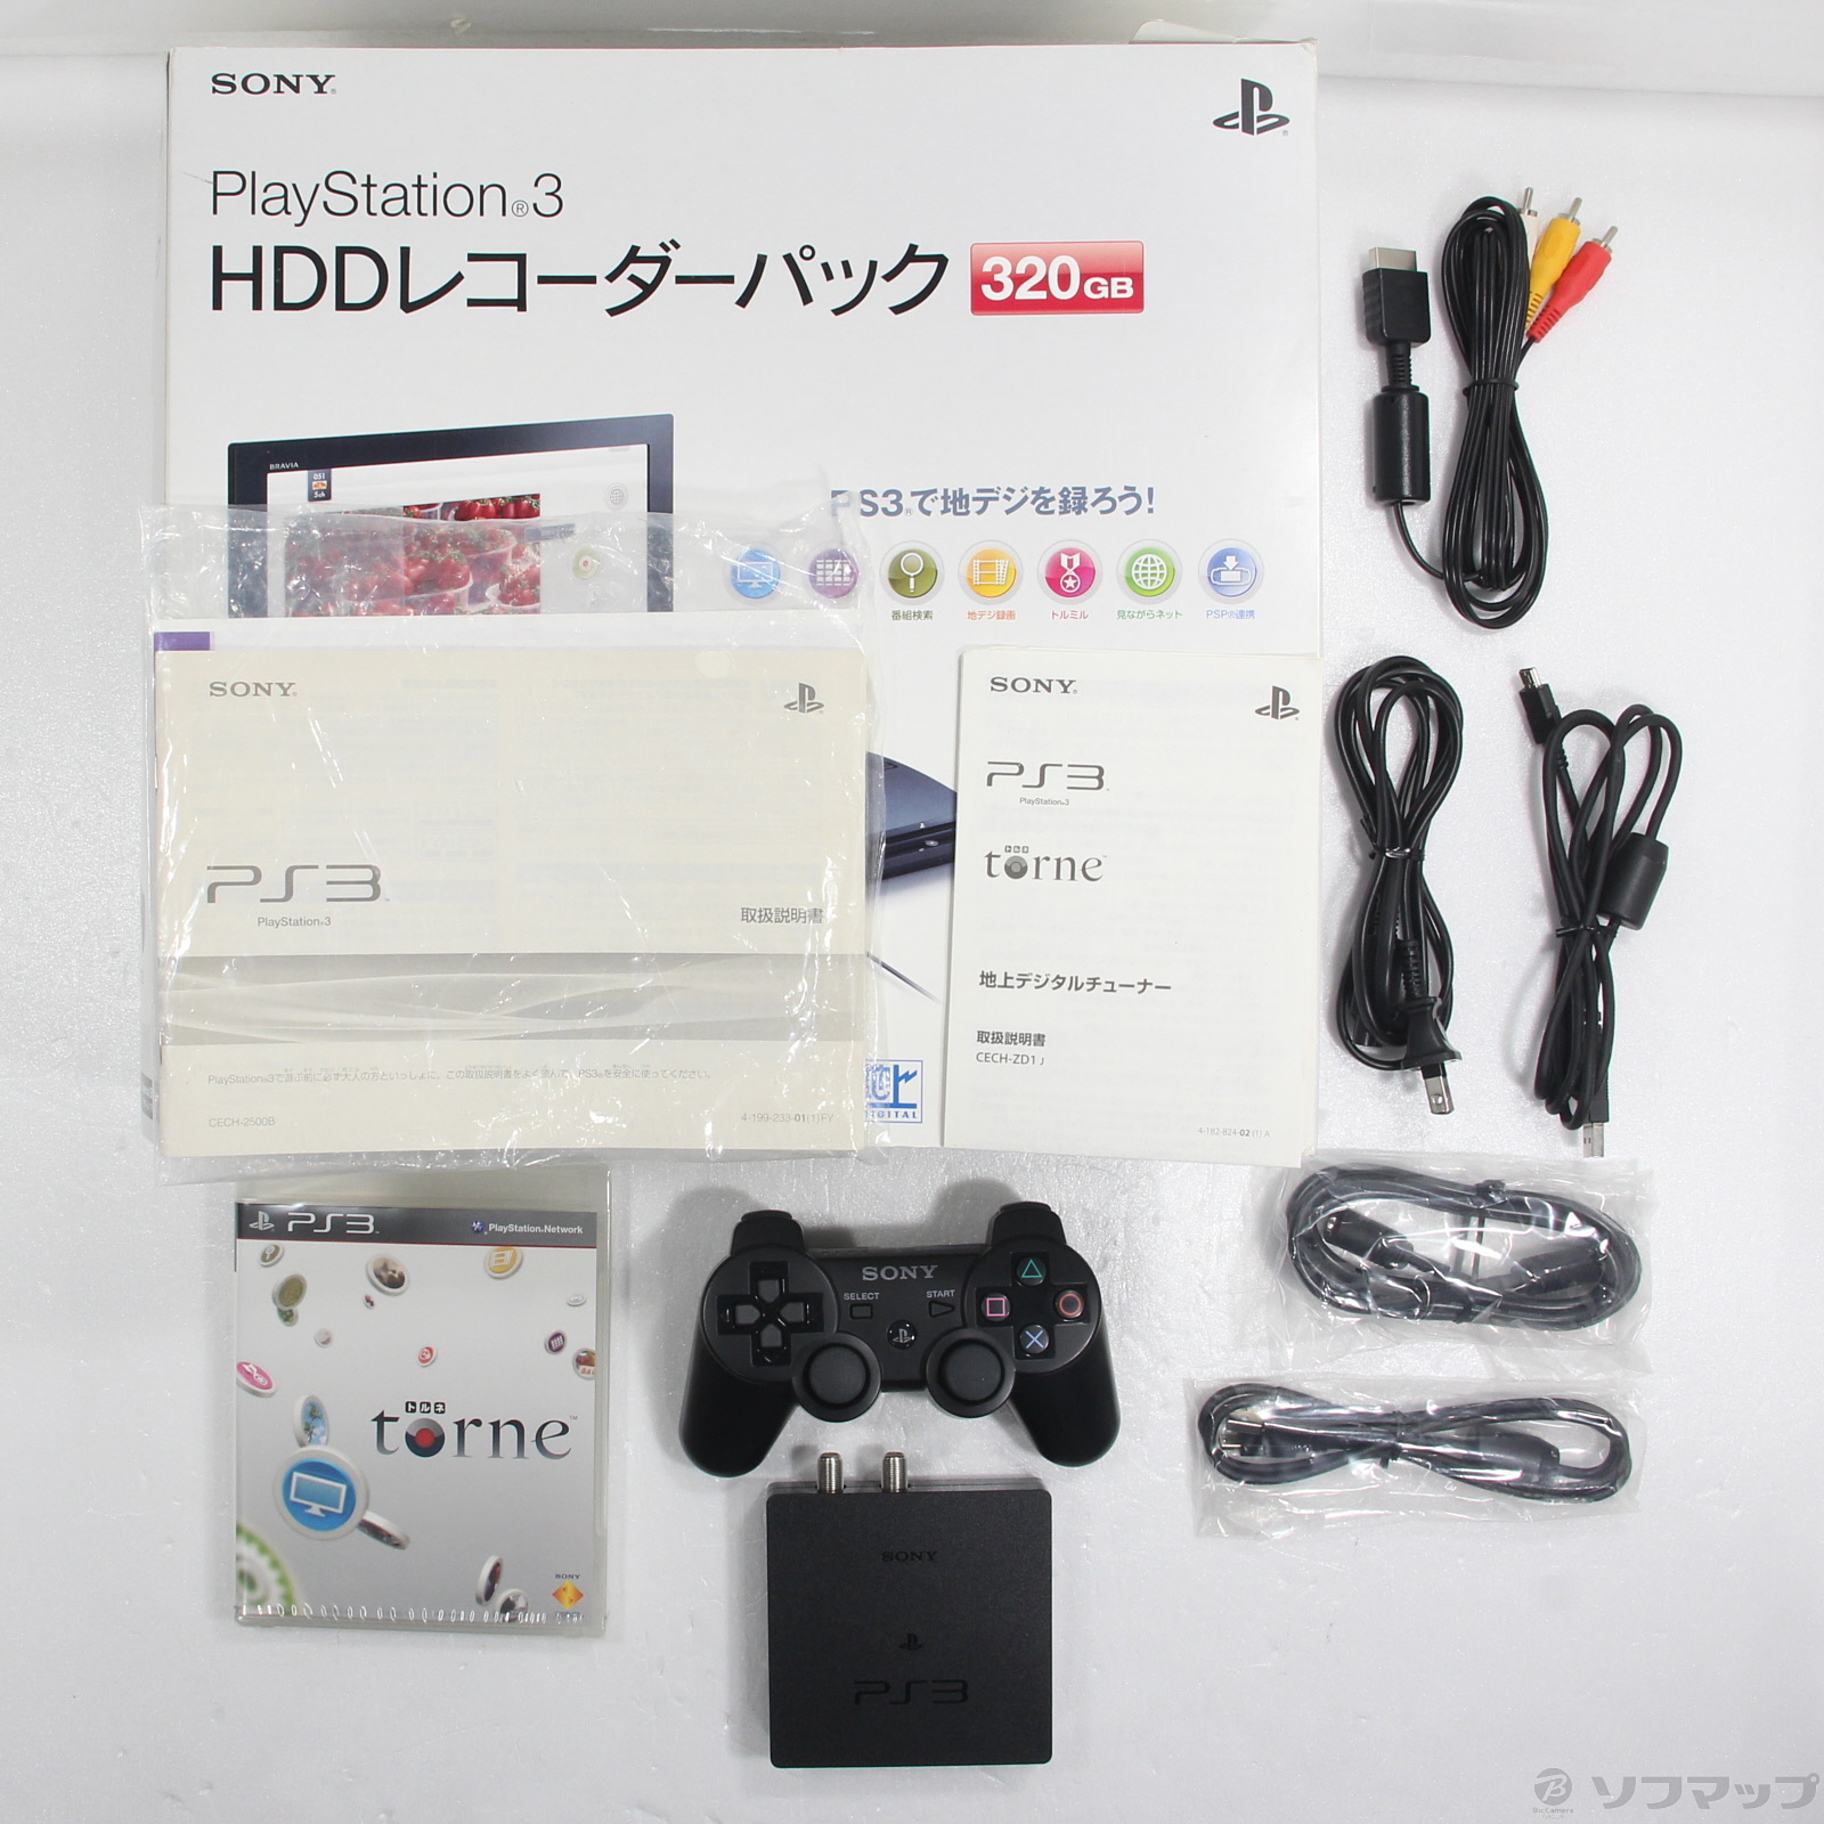 中古品〕 PlayStation 3 HDDレコーダーパック 320GB チャコール